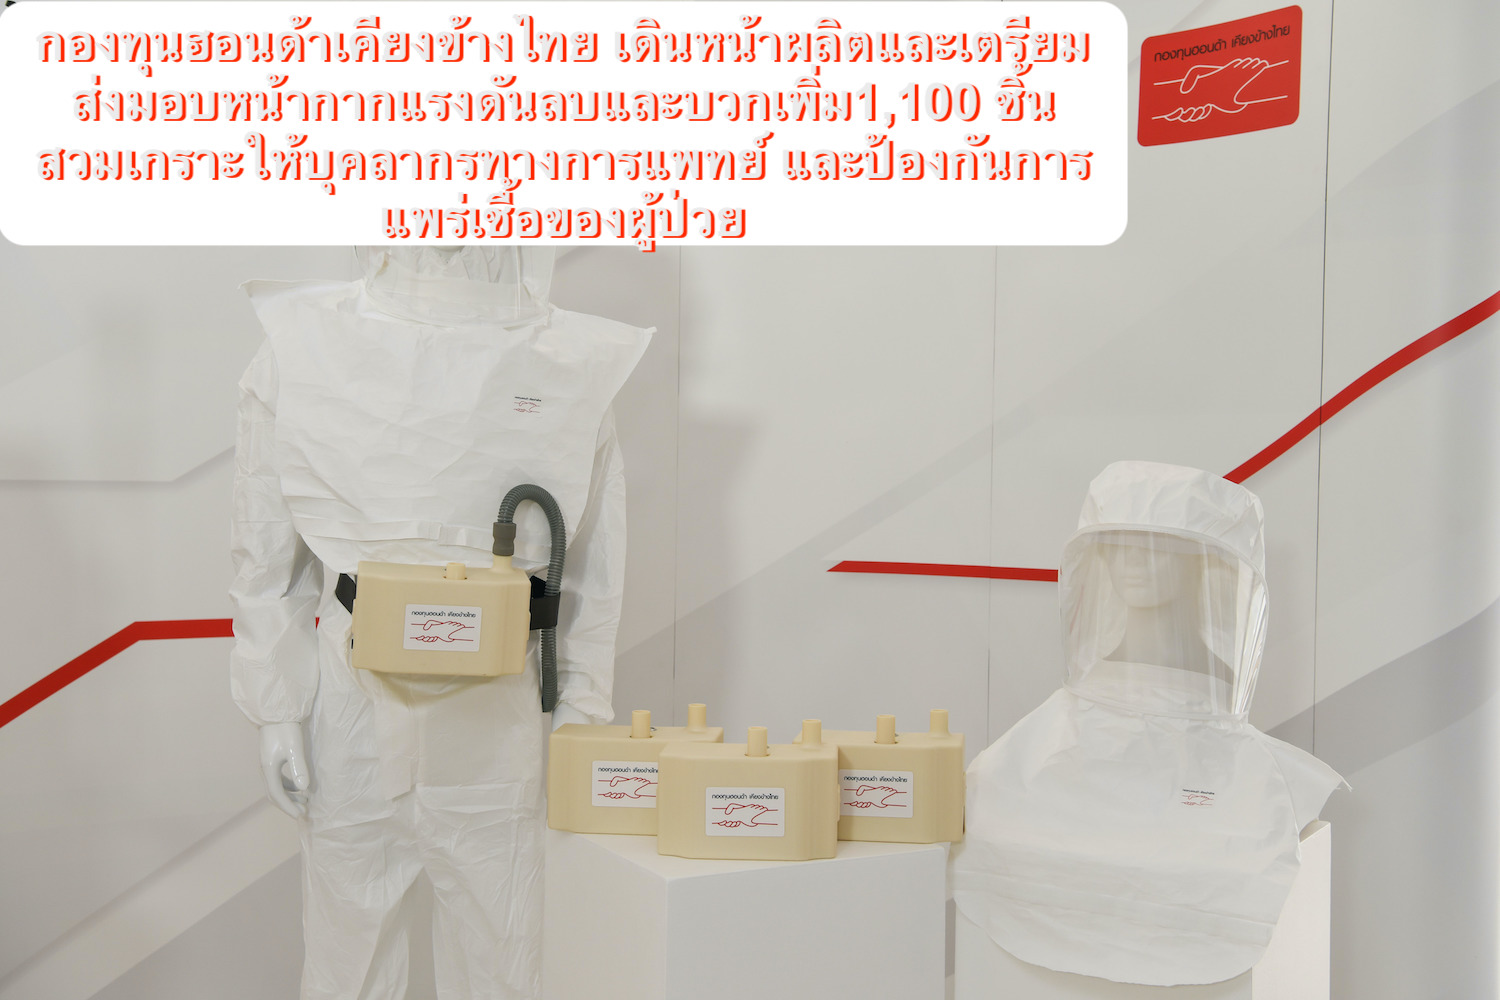 กองทุนฮอนด้าเคียงข้างไทยเดินหน้าผลิตและเตรียมส่งมอบหน้ากากแรงดันลบและบวกเพิ่ม 1,100 ชิ้น สวมเกราะให้บุคลากรทางการแพทย์ และป้องกันการแพร่เชื้อของผู้ป่วย